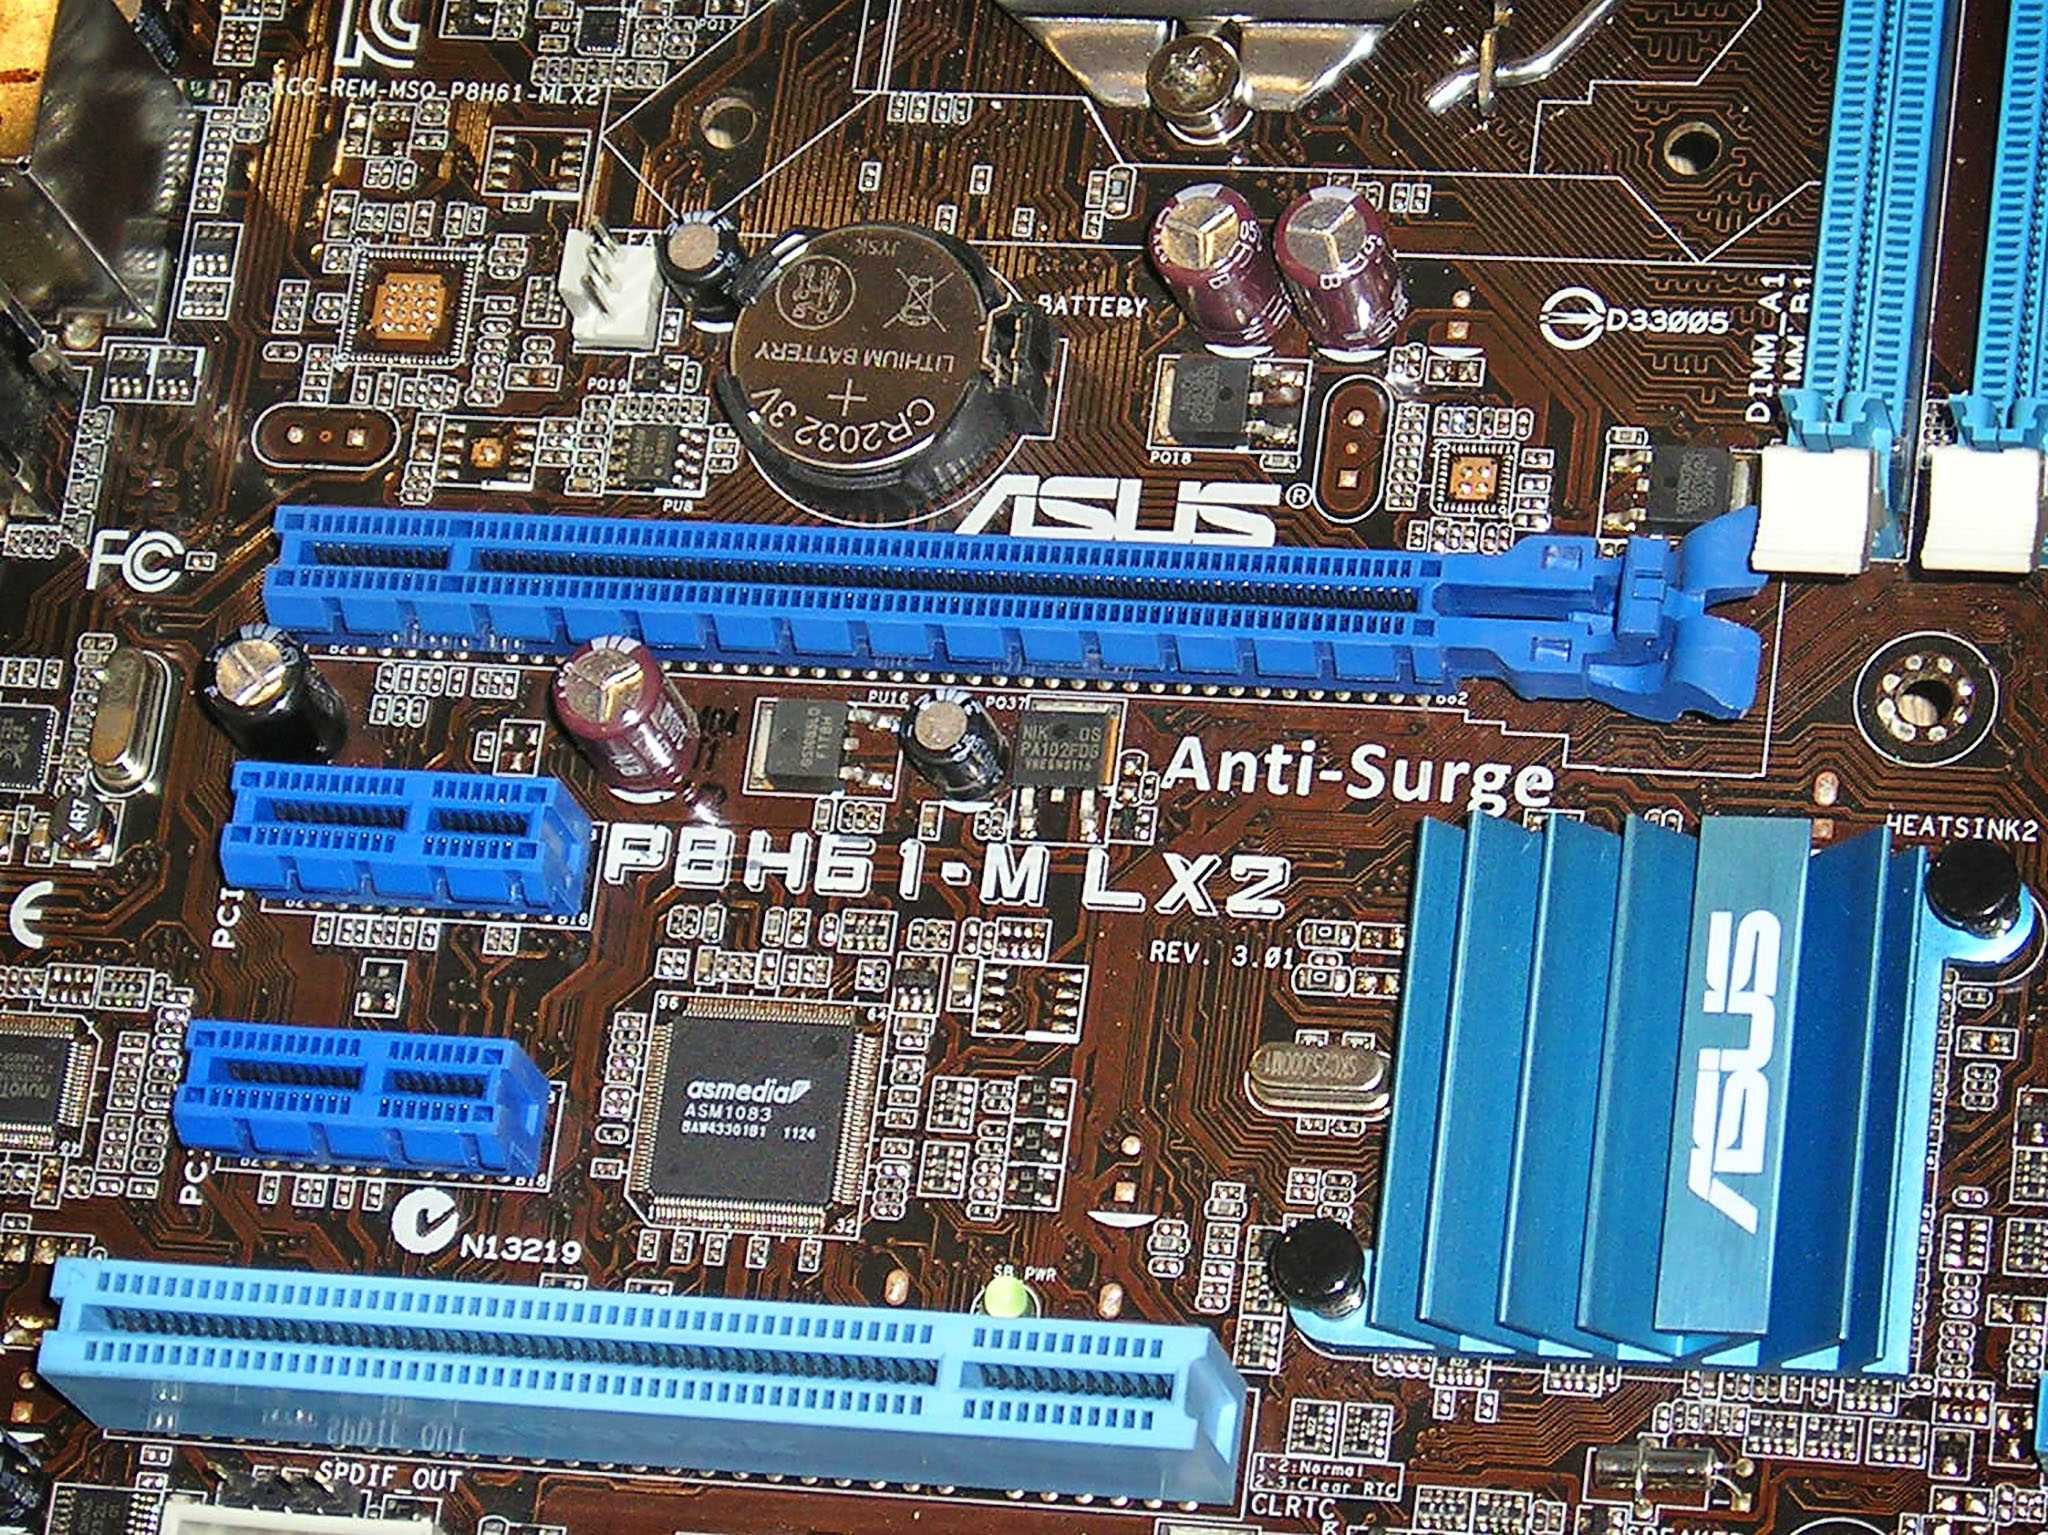 Комплект для ПК на 4-хъядерном Intel i5 s1155 (проц+материнка+память)